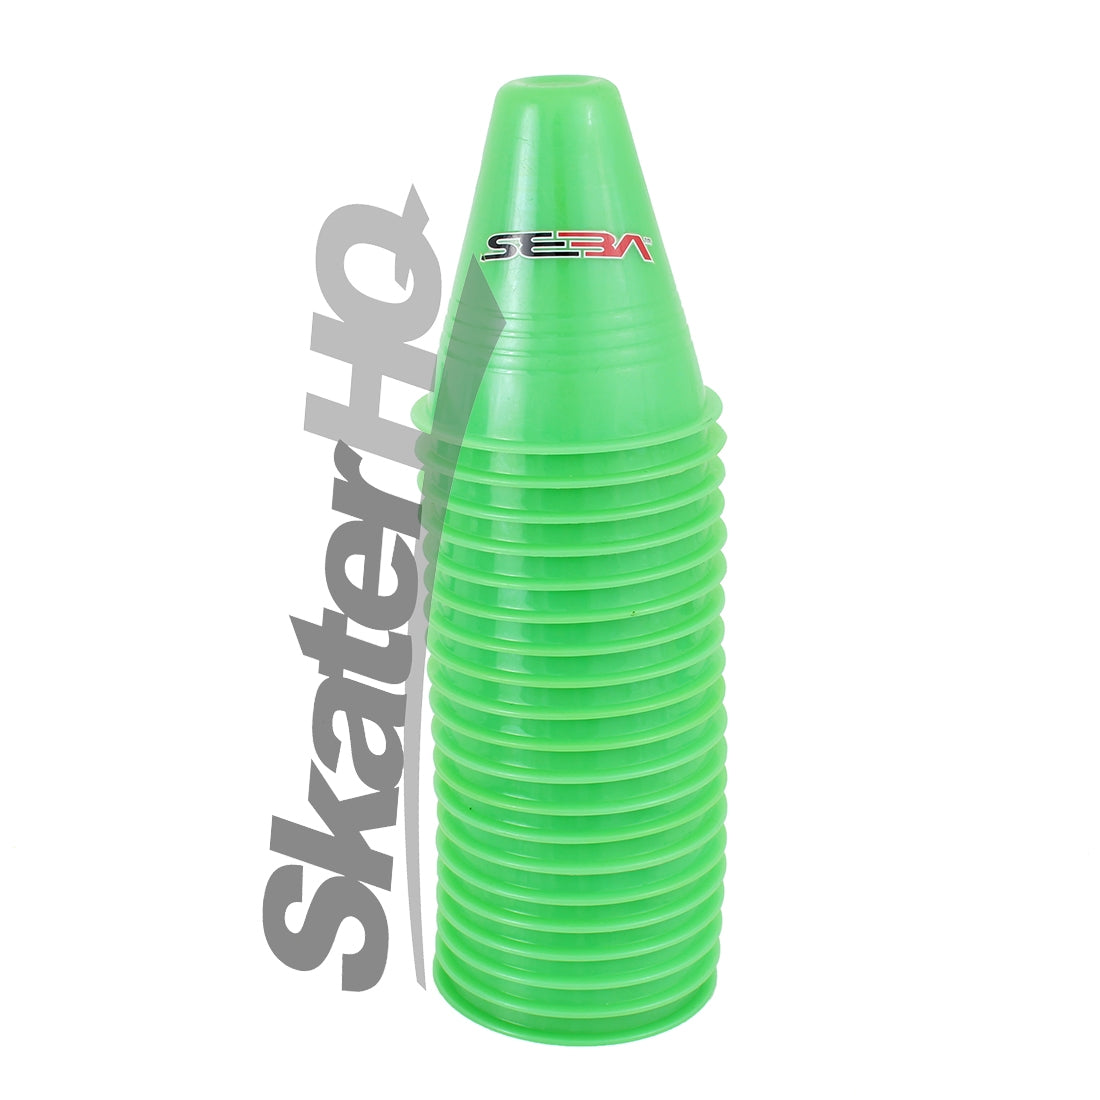 SEBA Slalom Cones 20pk - Green Inline Rec Accessories